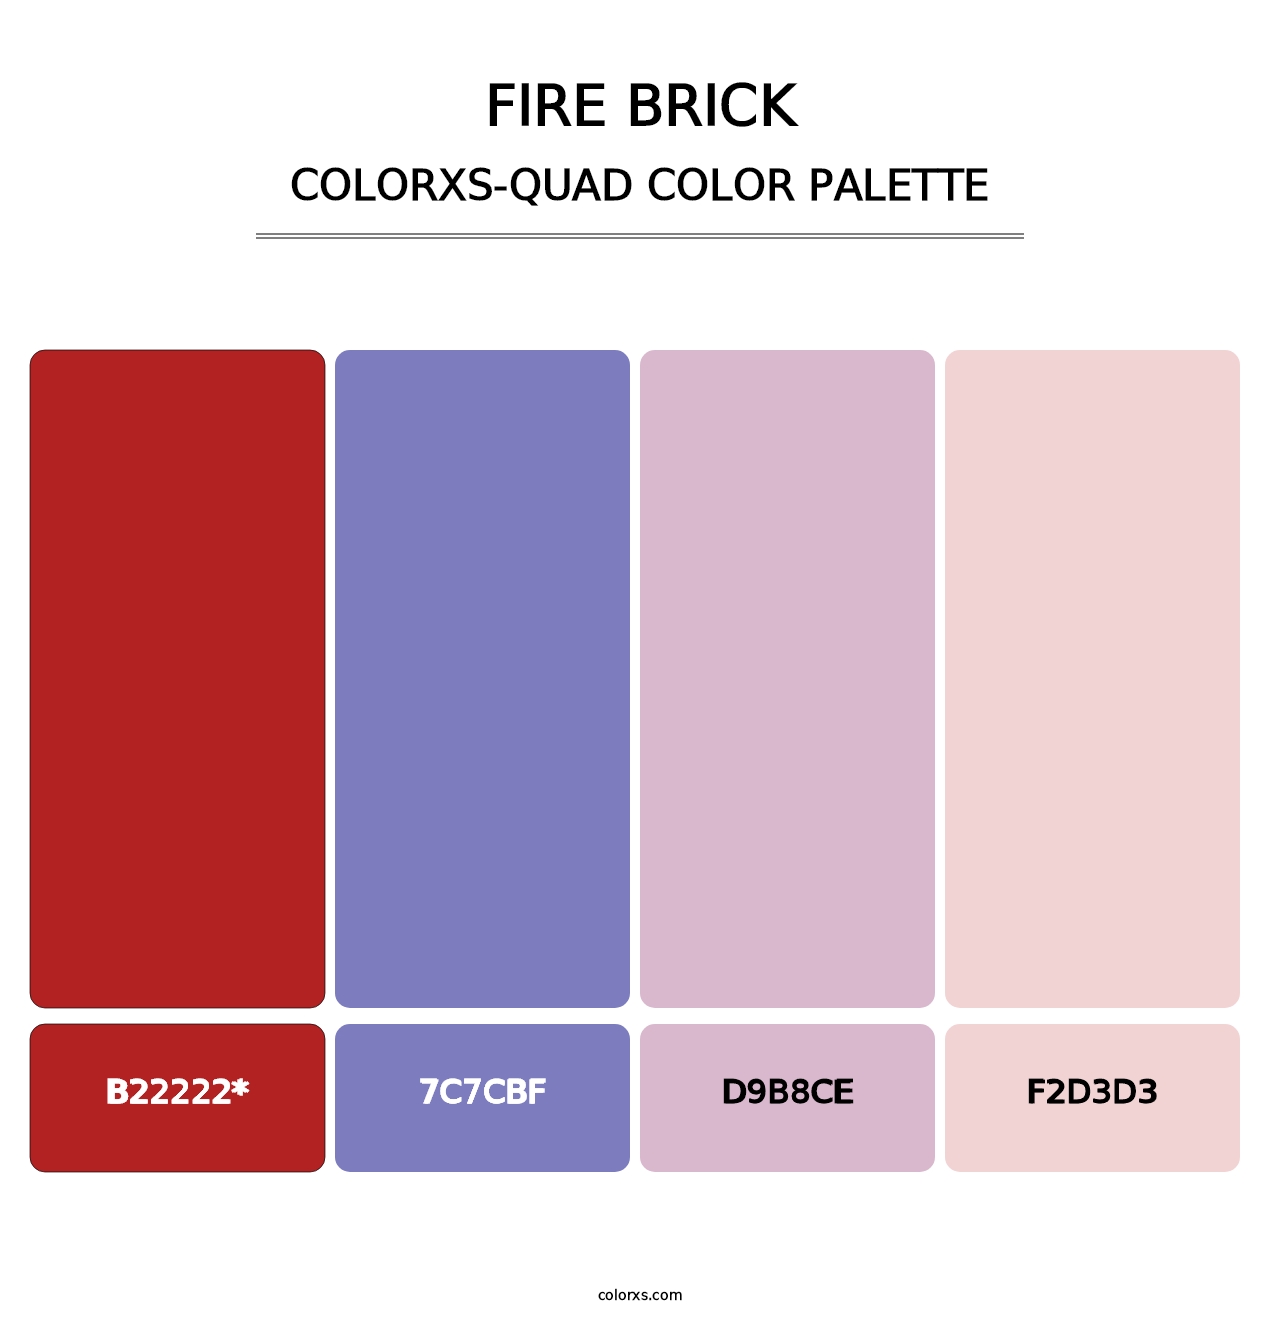 Fire Brick - Colorxs Quad Palette